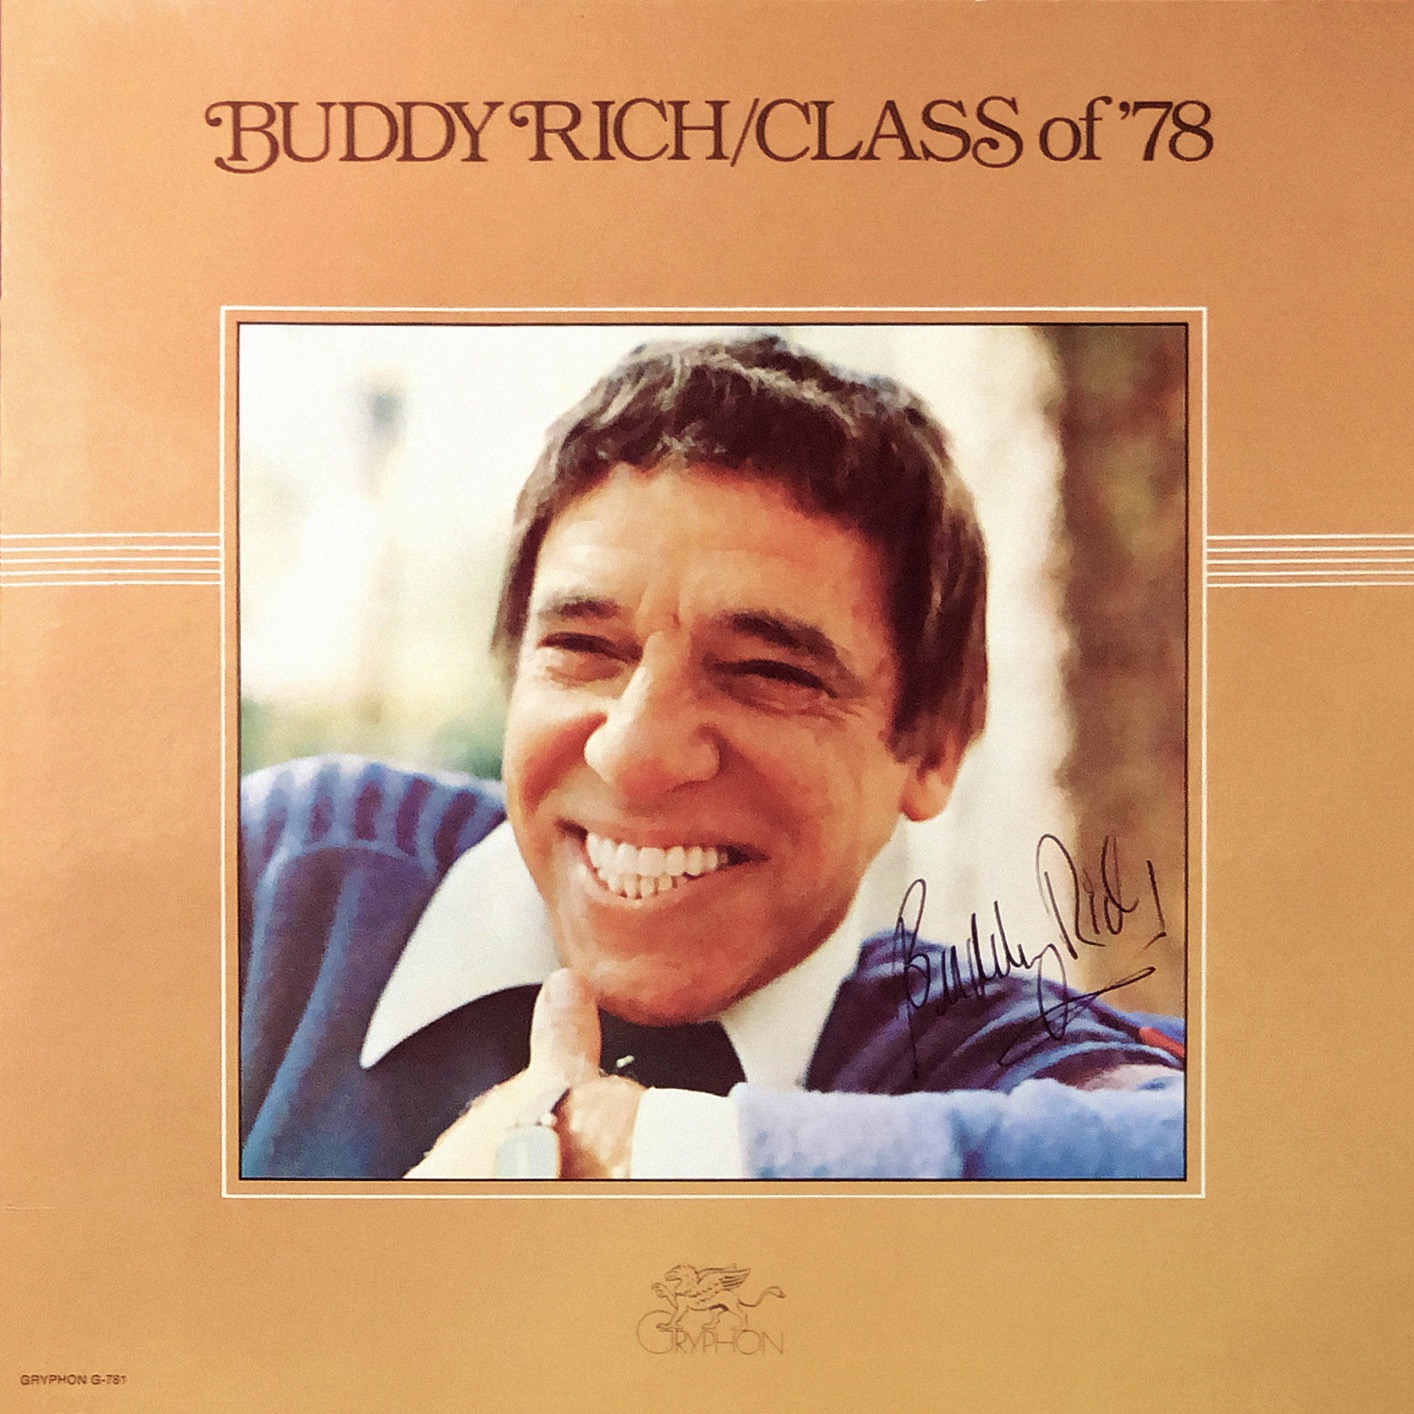 Buddy Rich - Class of ’78 (1978/2019) [FLAC 24bit/96kHz]